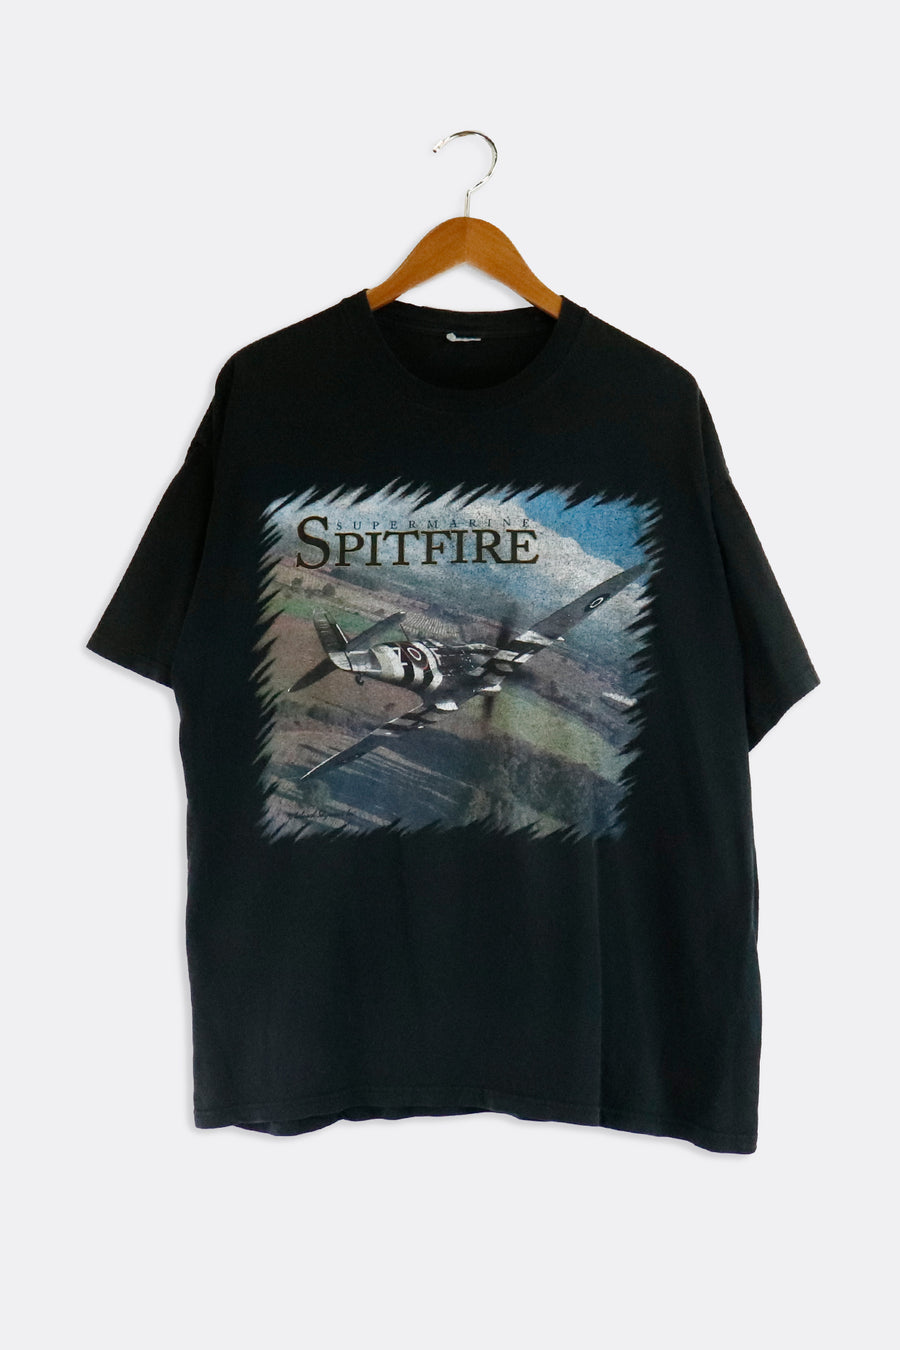 Vintage Super Marine Spitfire T Shirt